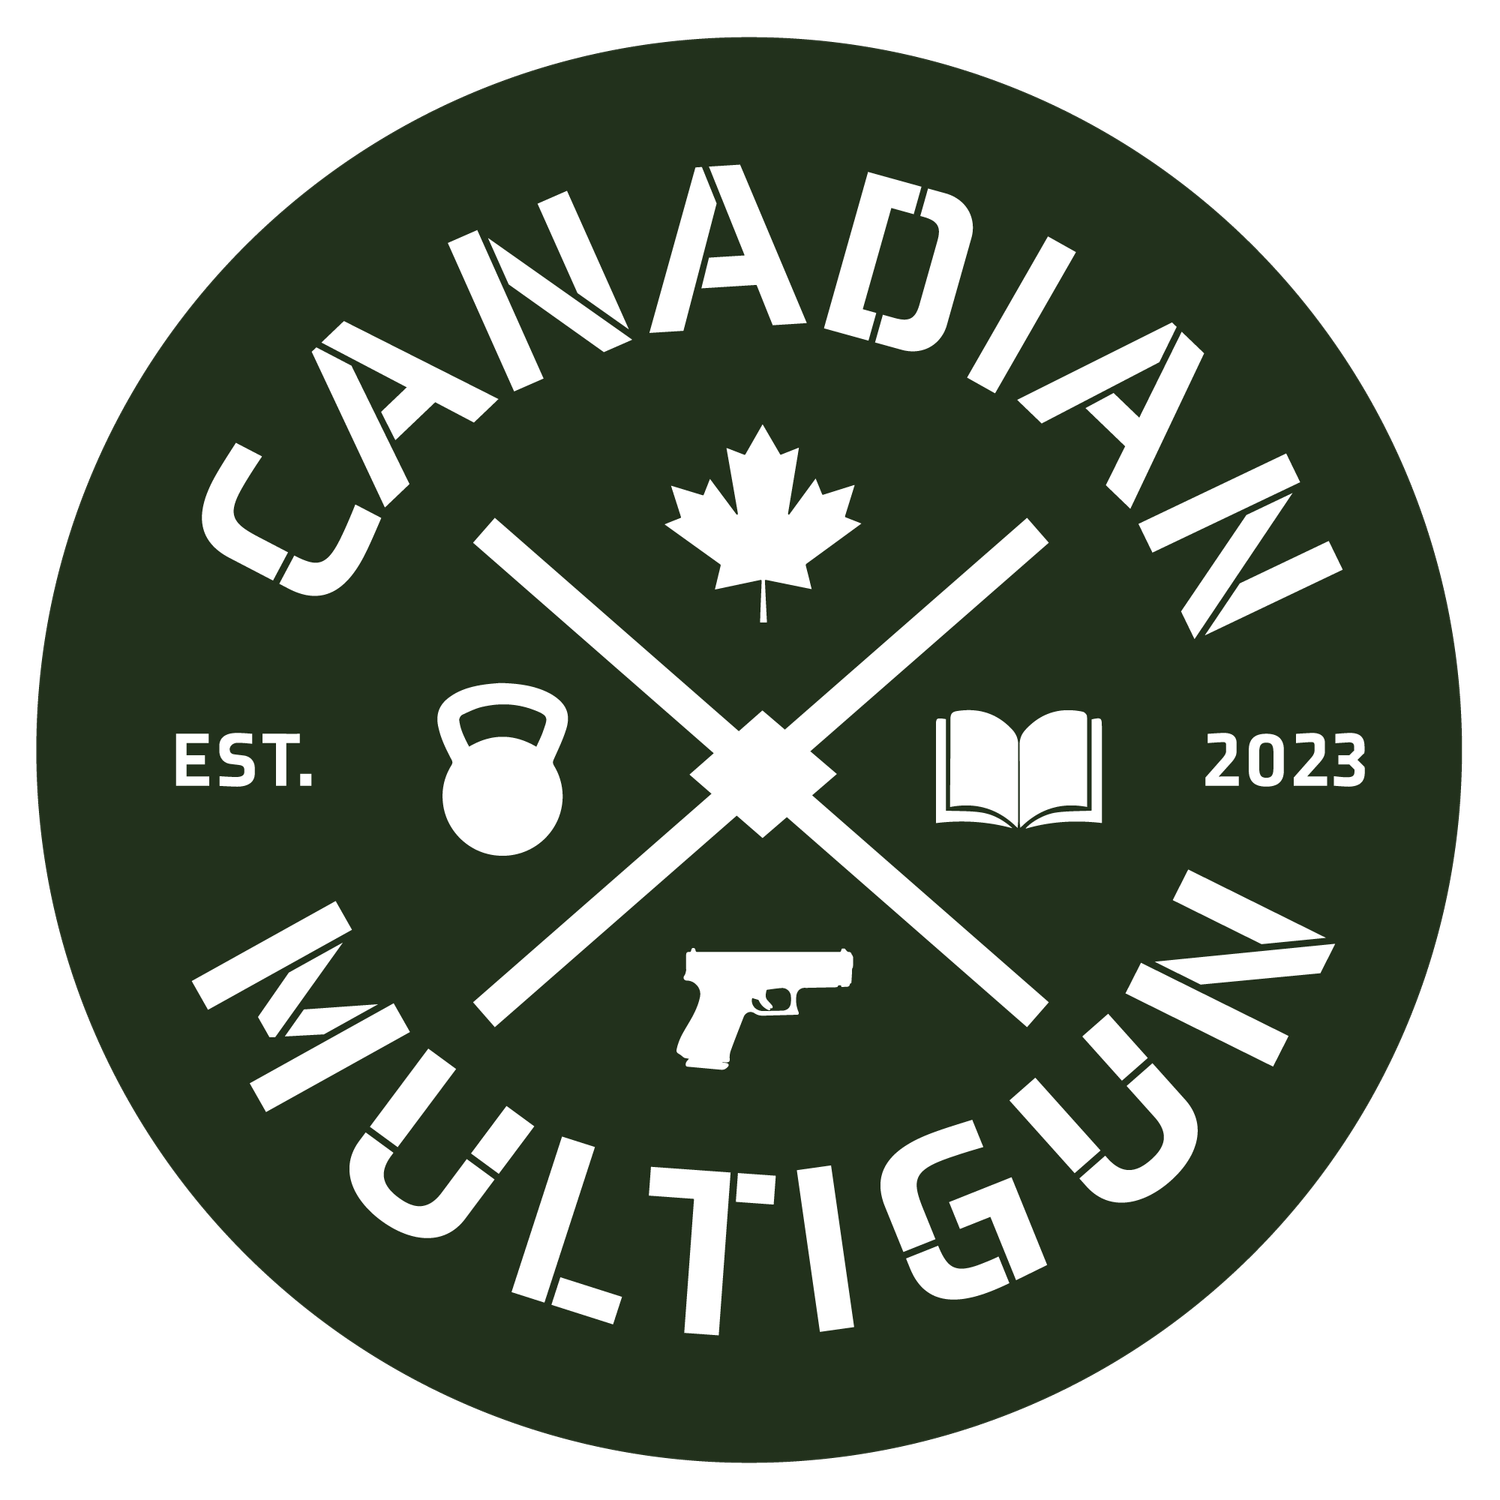 Canadian Multigun